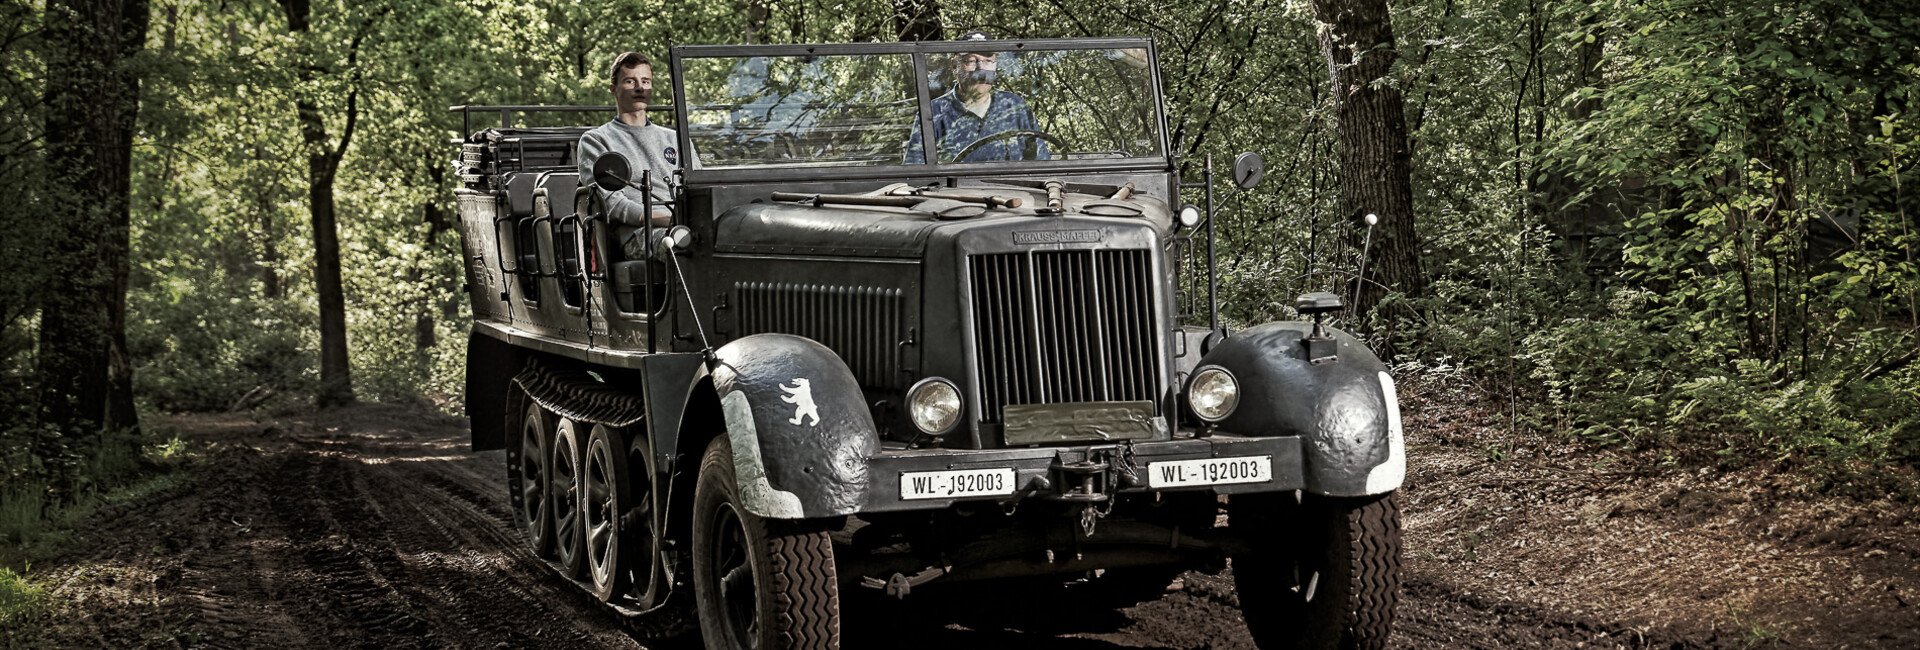 oorlogsmuseum - Teilnehmende Fahrzeuge